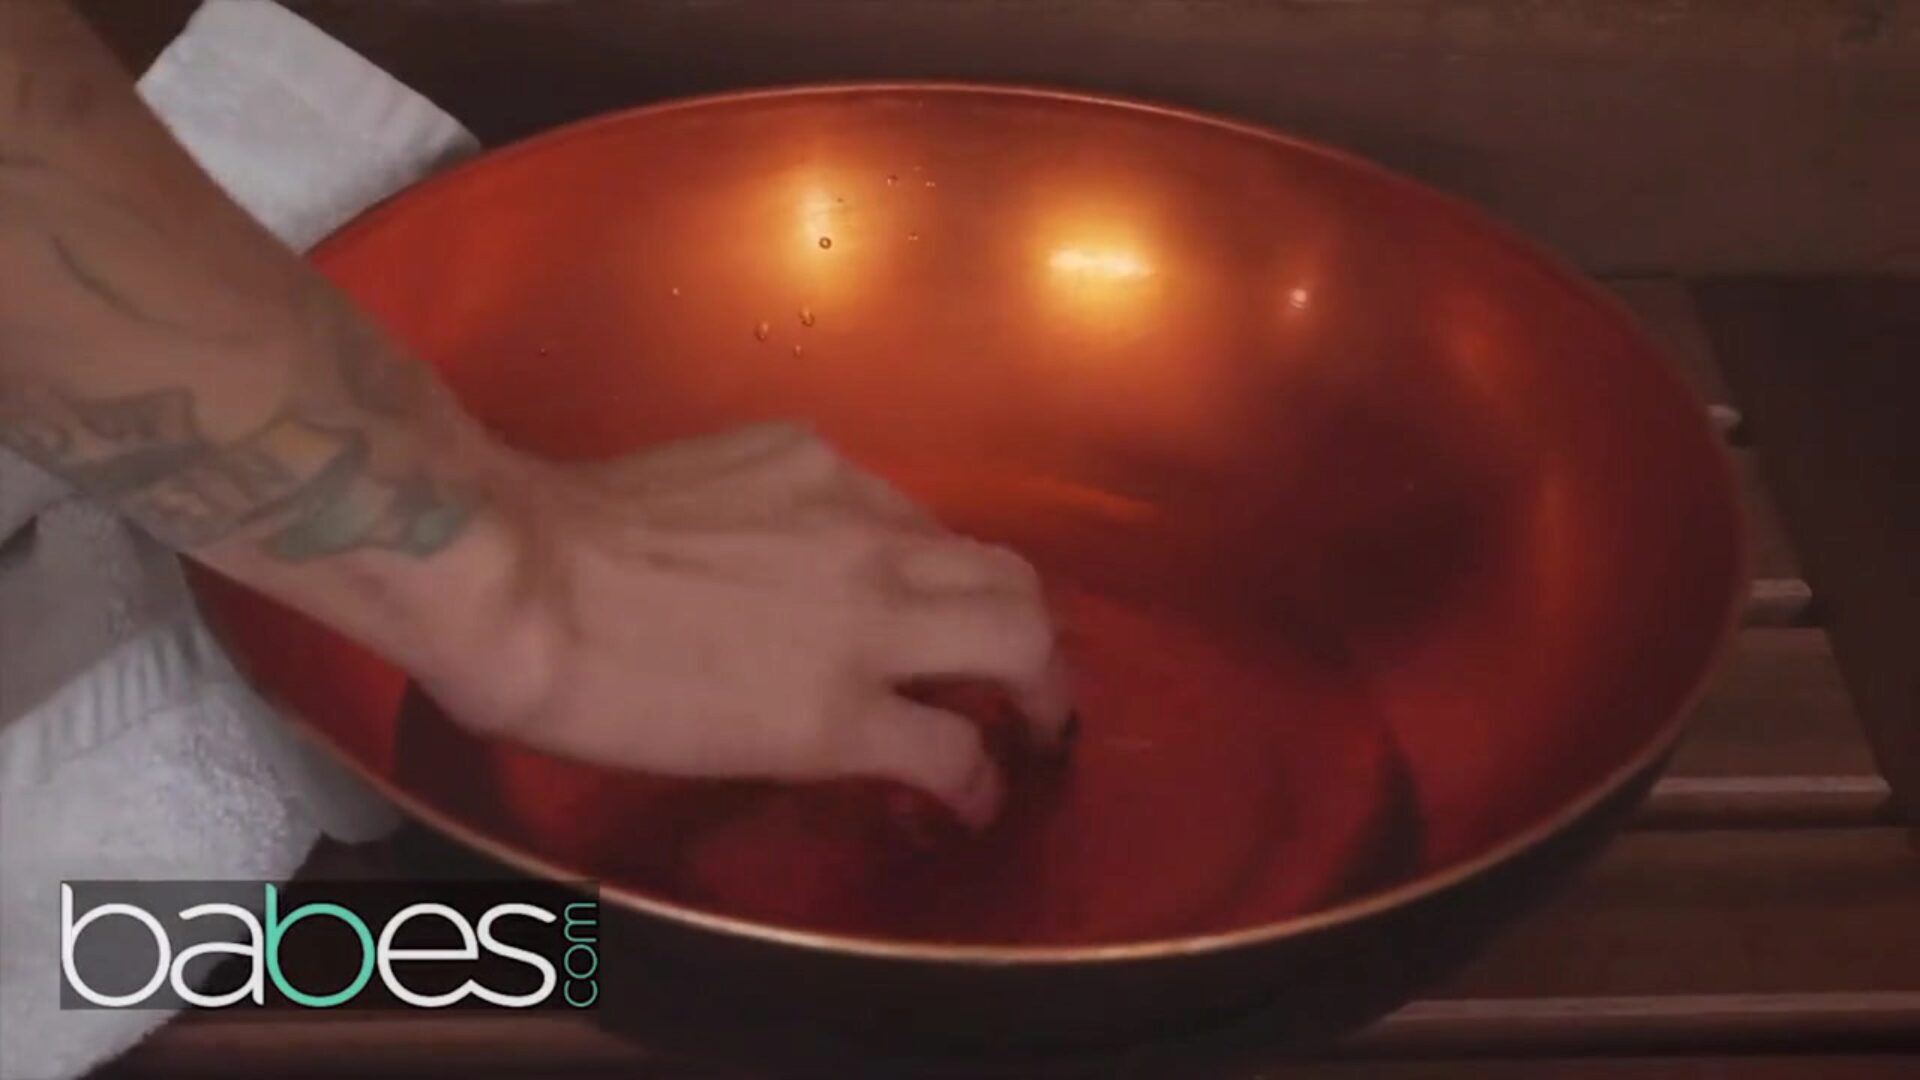 csajok - nagy szamár aranyhajú felnőtt filmsztár, Jessa Rhodes végbélen belüli magömlést kap a szaunában